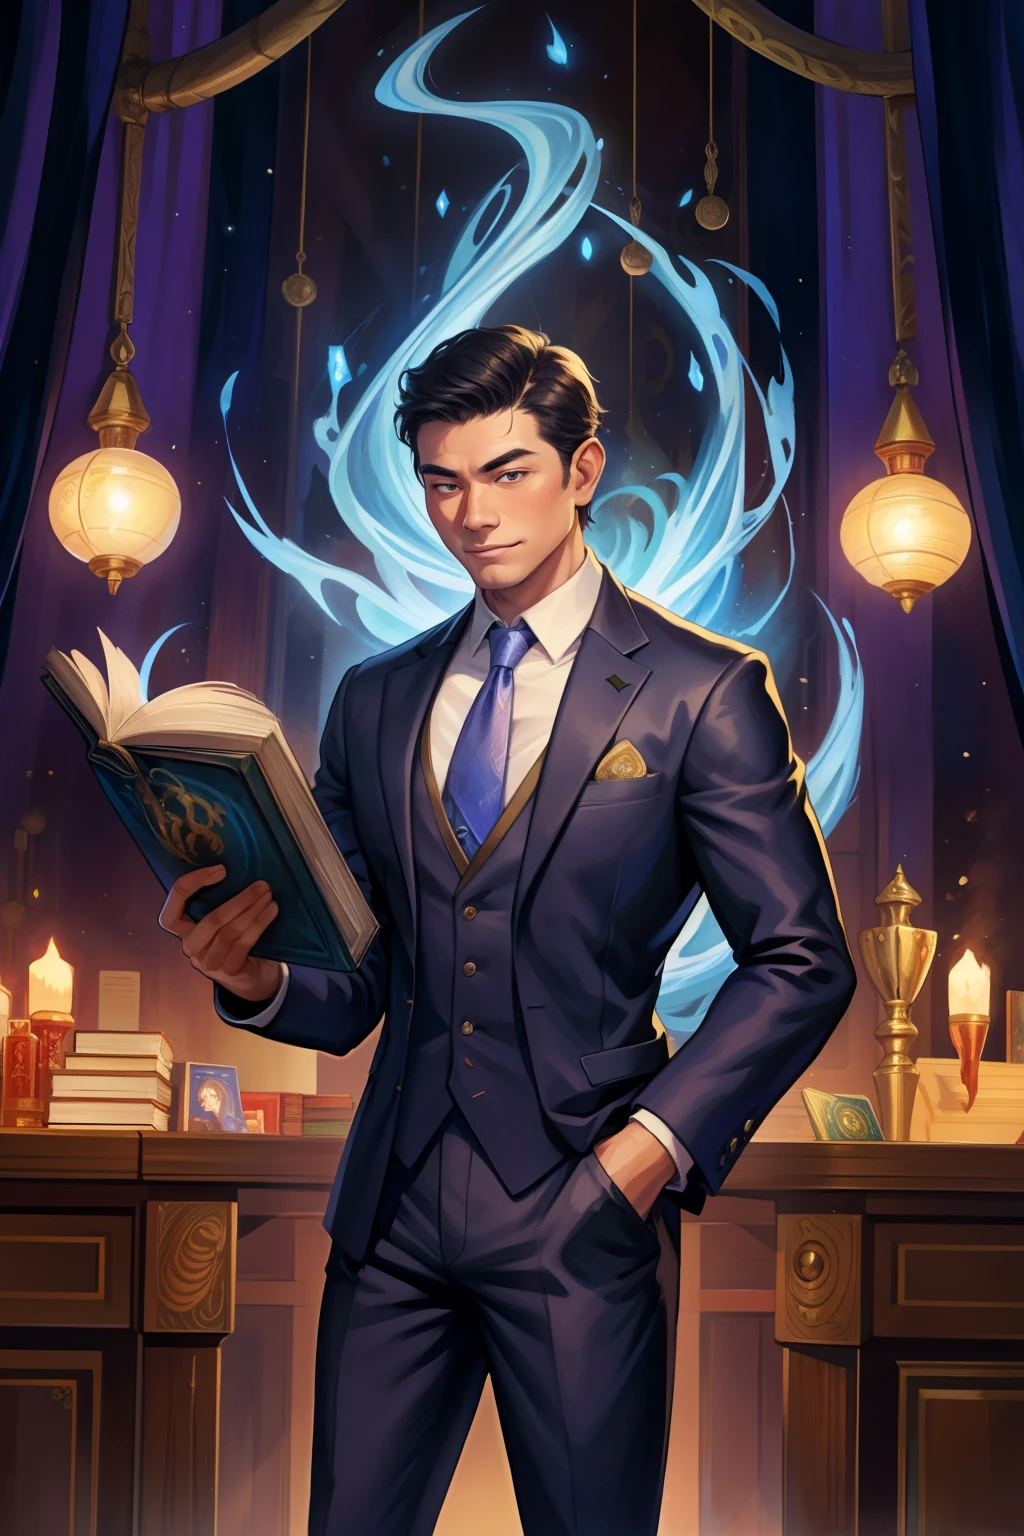 لوحة مفصلة تصور وسيم, رجل آسيوي ناضج يرتدي بدلة محاطًا بموجة من بطاقات Magic The Gathering المتوهجة وكتاب Dungeons and Dragons في المنتصف.